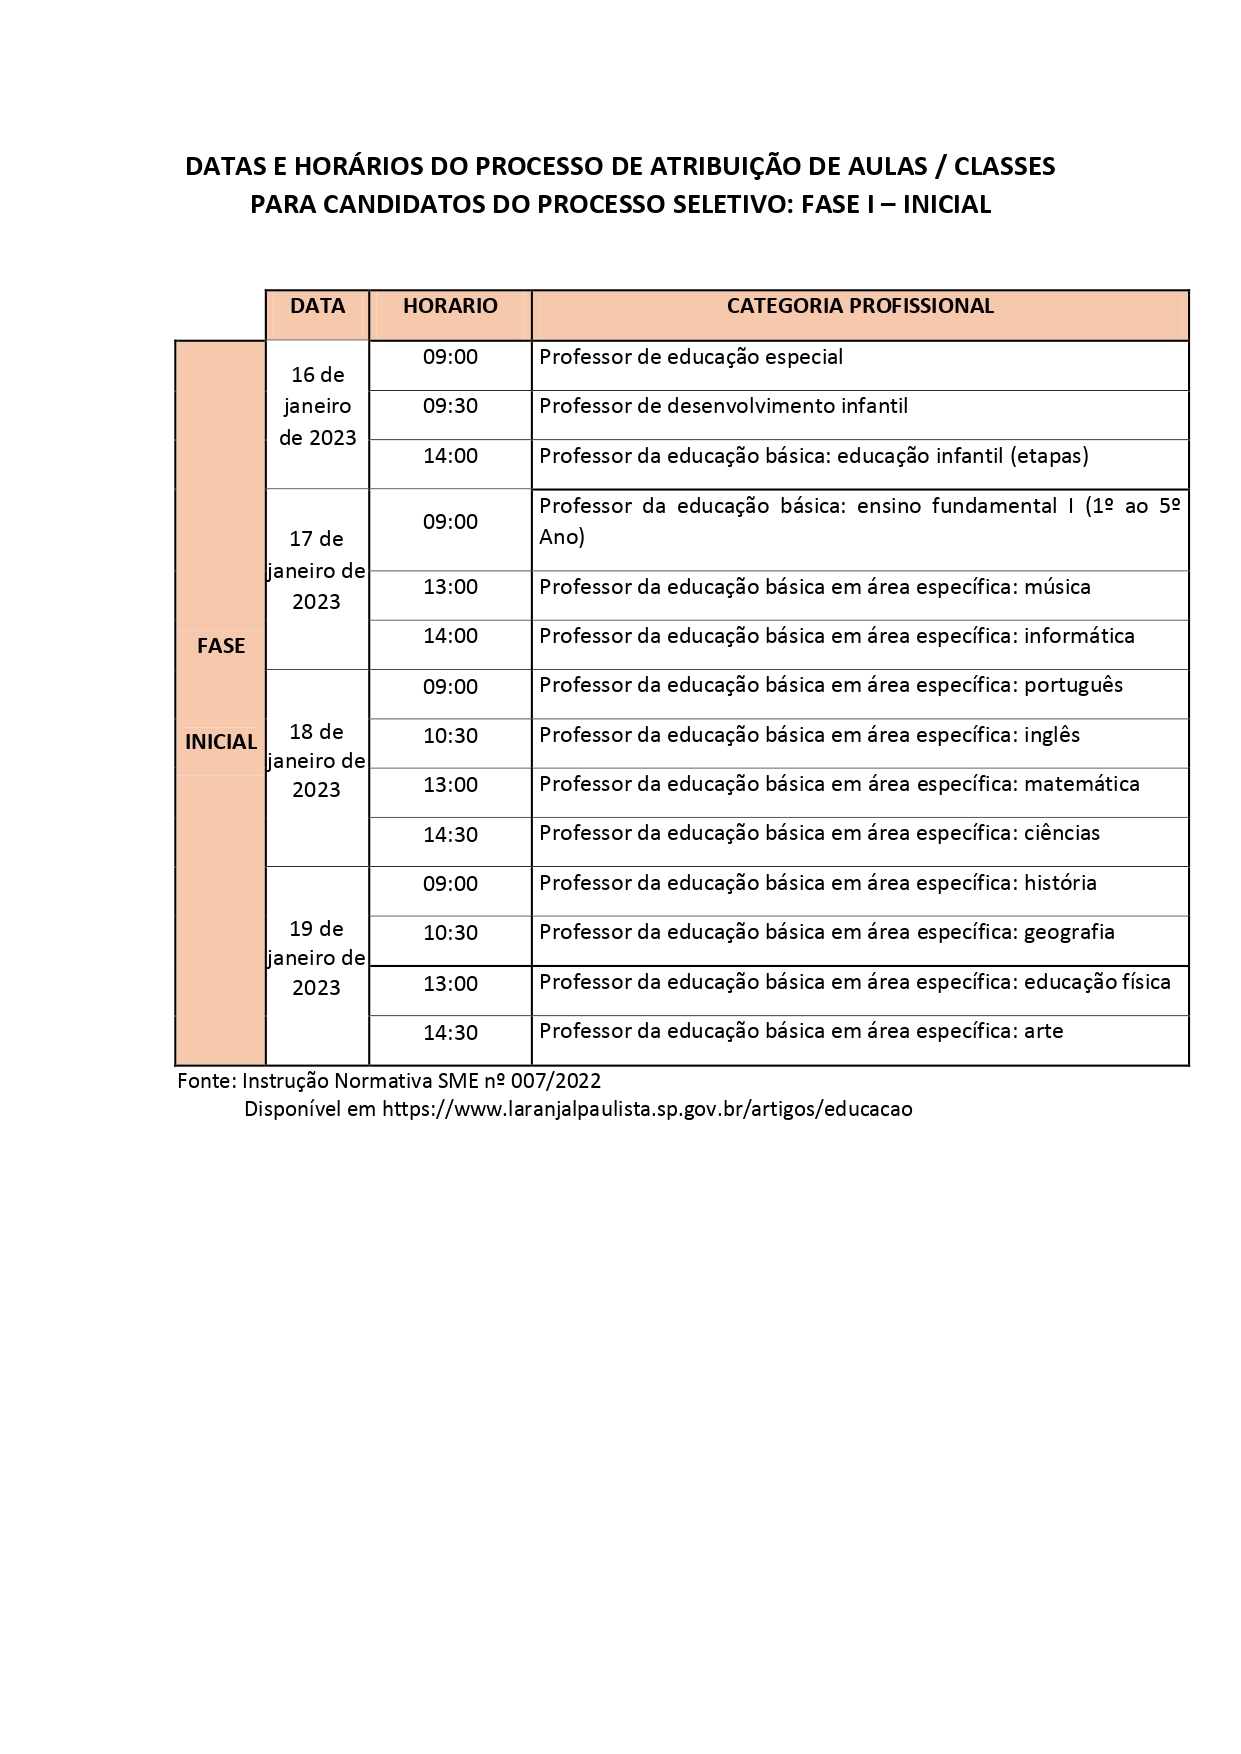 Datas e horários do processo de atribuição de aulas/classes para candidatos do Processo Seletivo: fase I - inicial